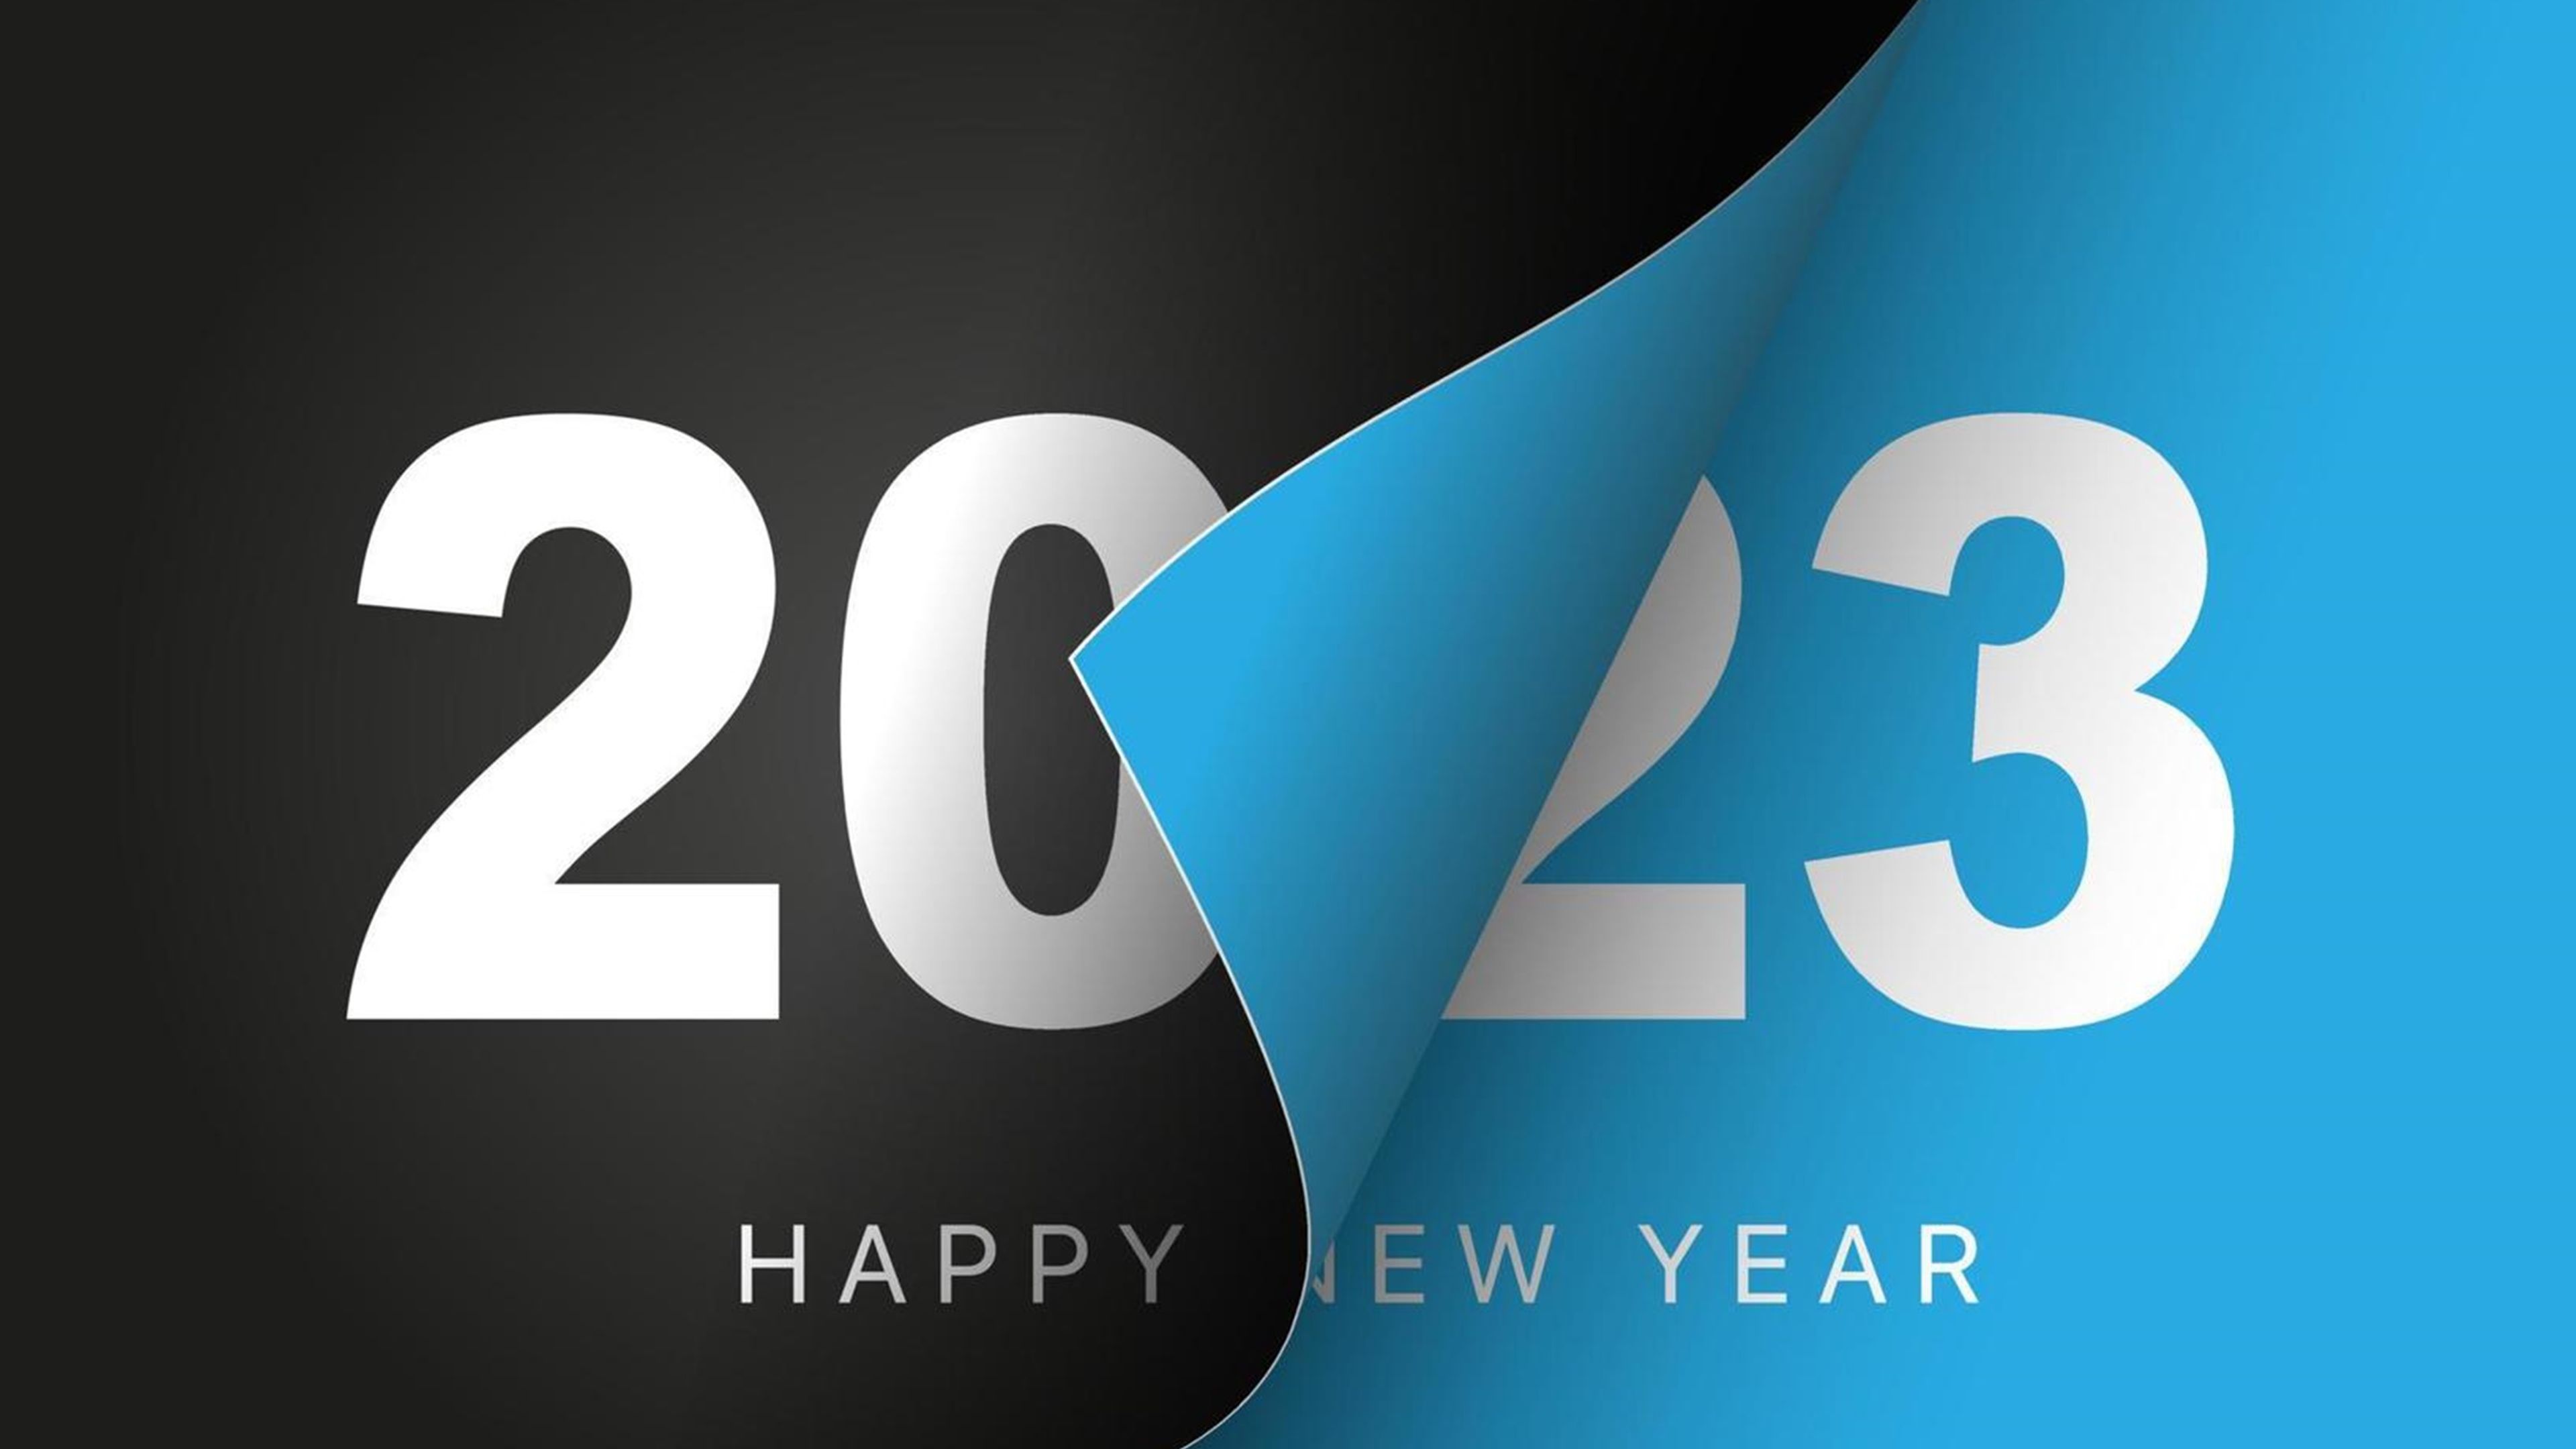 Mensajes divertidos y originales para felicitar el Año Nuevo 2023